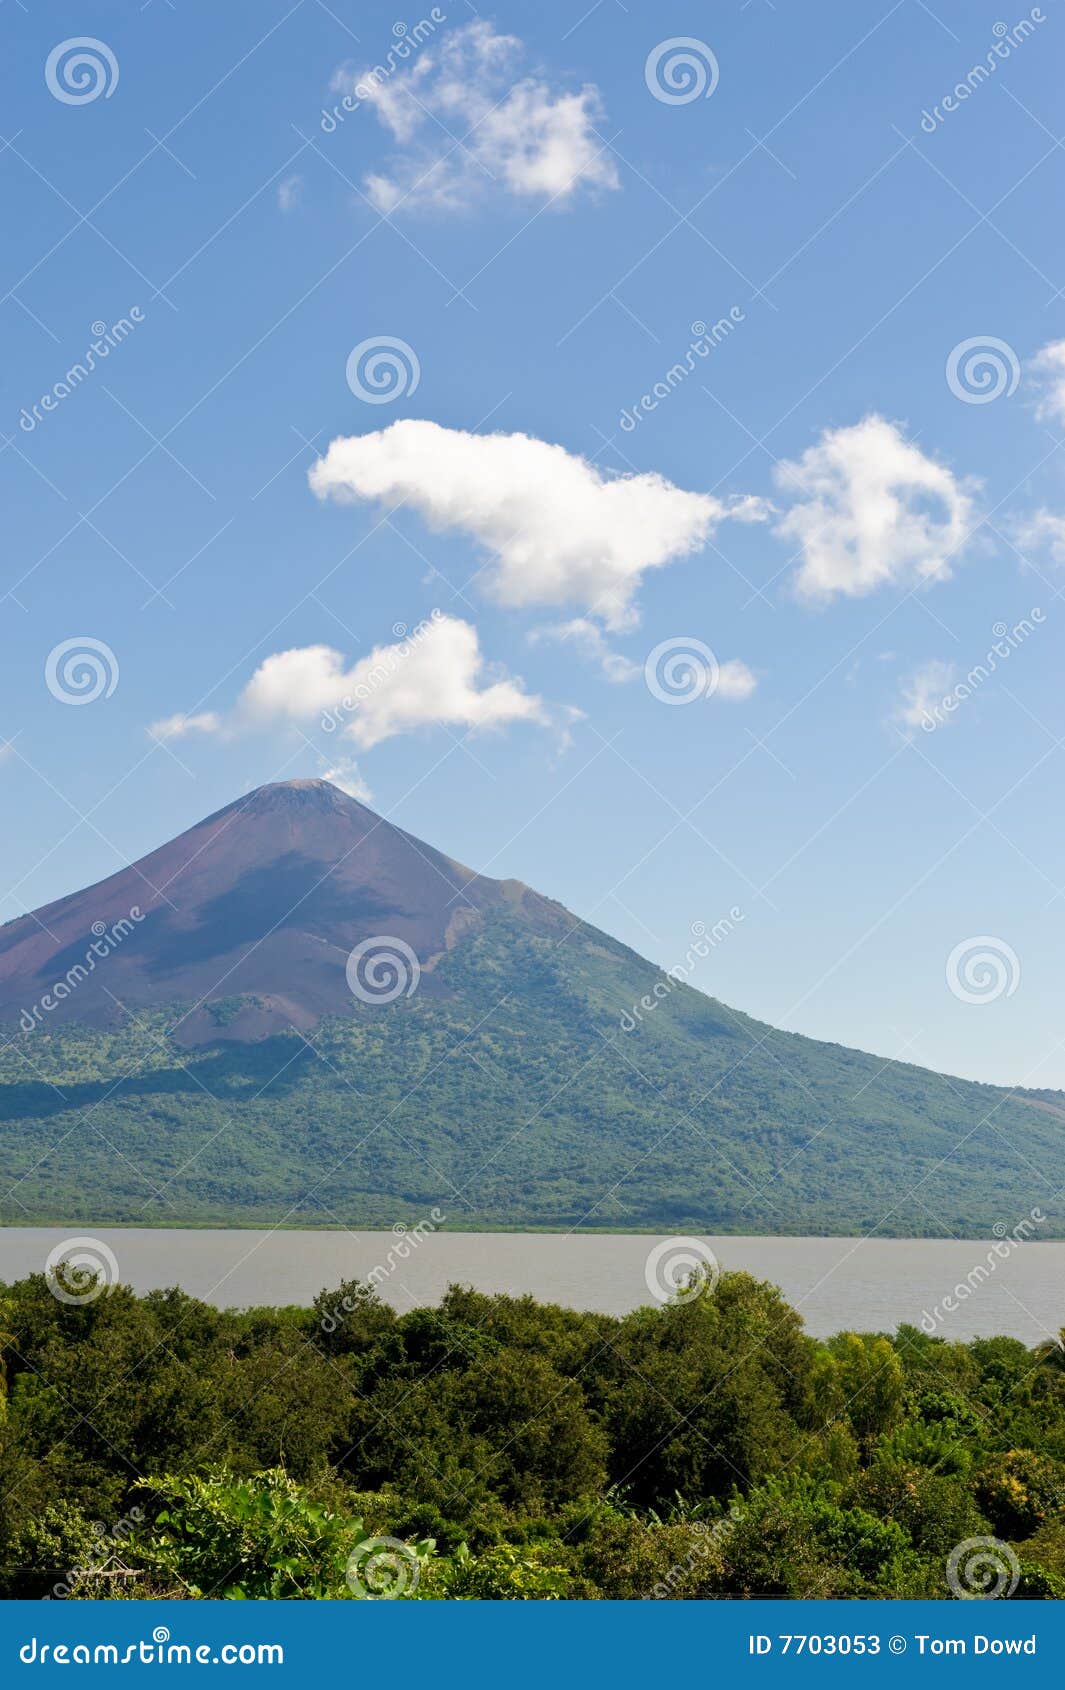 momotombo volcano nicaragua